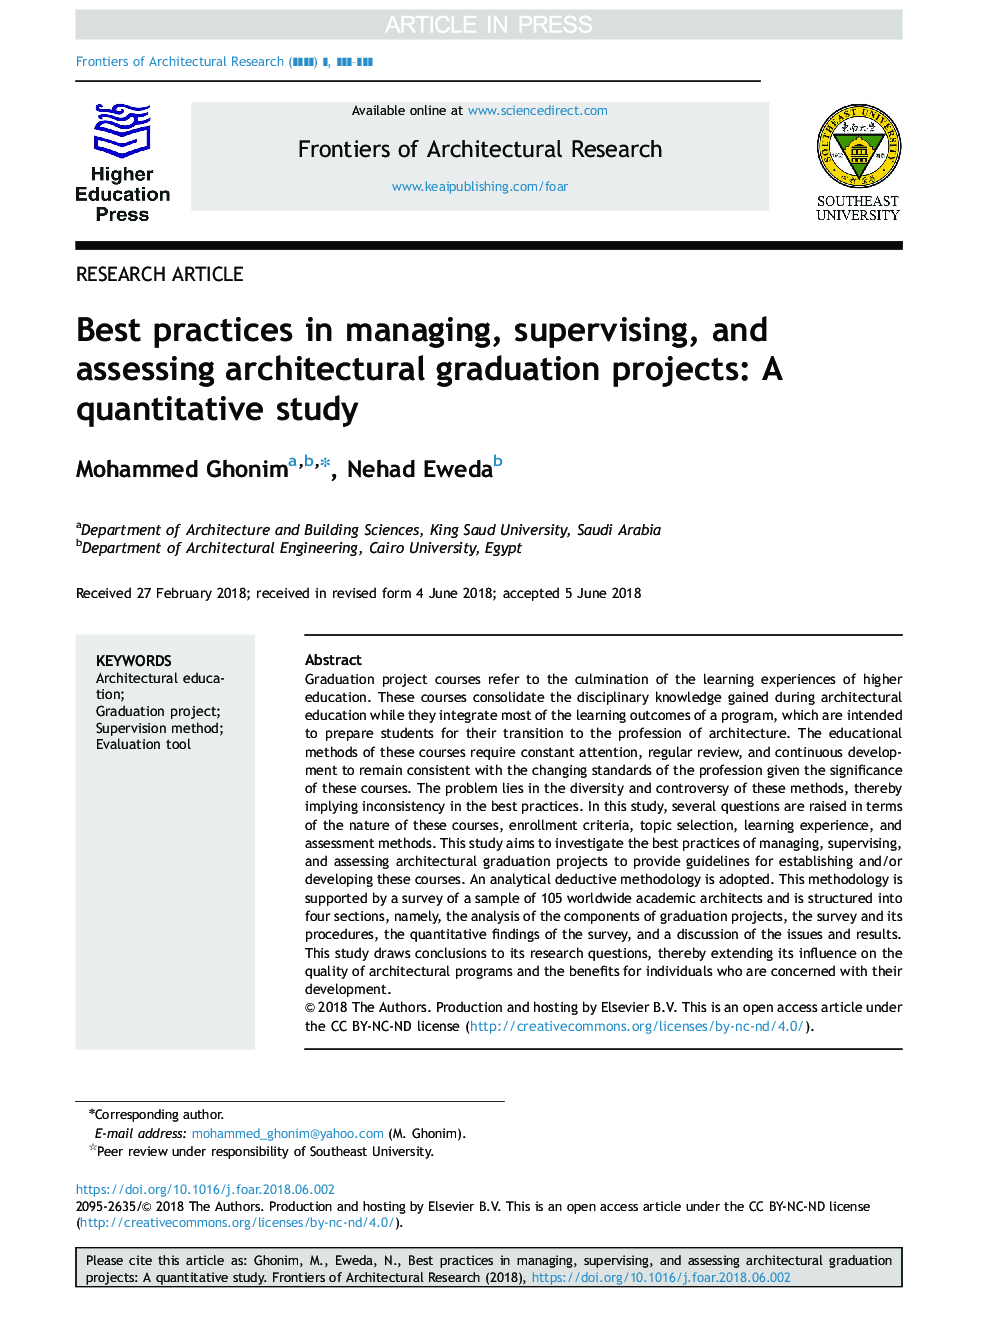 بهترین شیوه های مدیریت، نظارت و ارزیابی پروژه های فارغ التحصیل معماری: یک مطالعه کمی